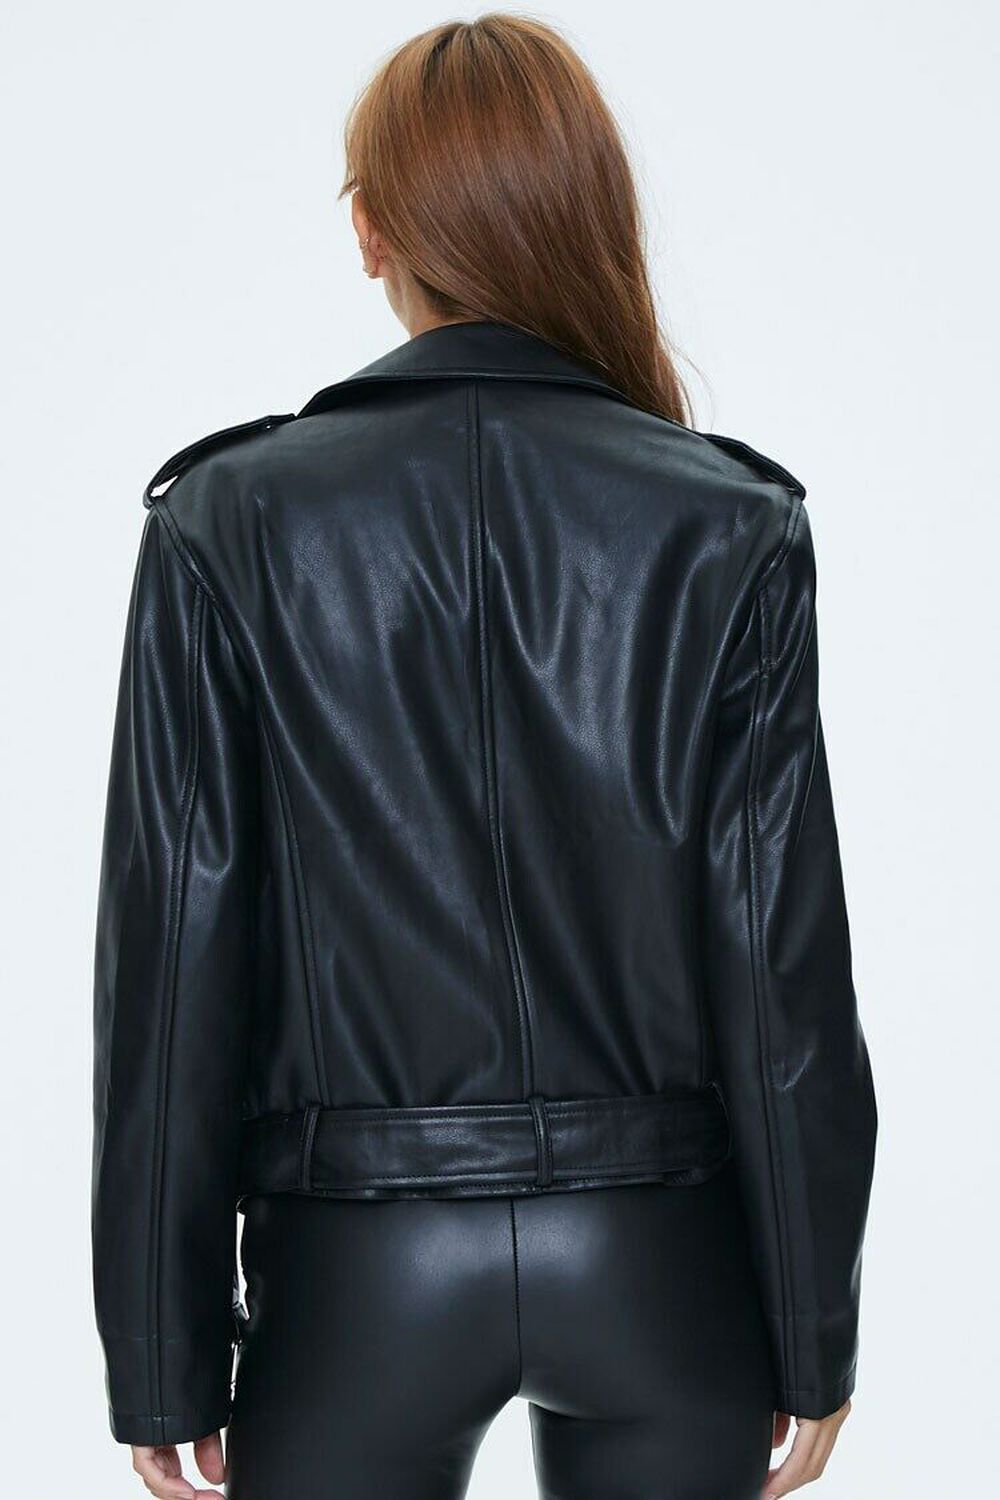 BLACK Faux Leather Moto Jacket, image 3